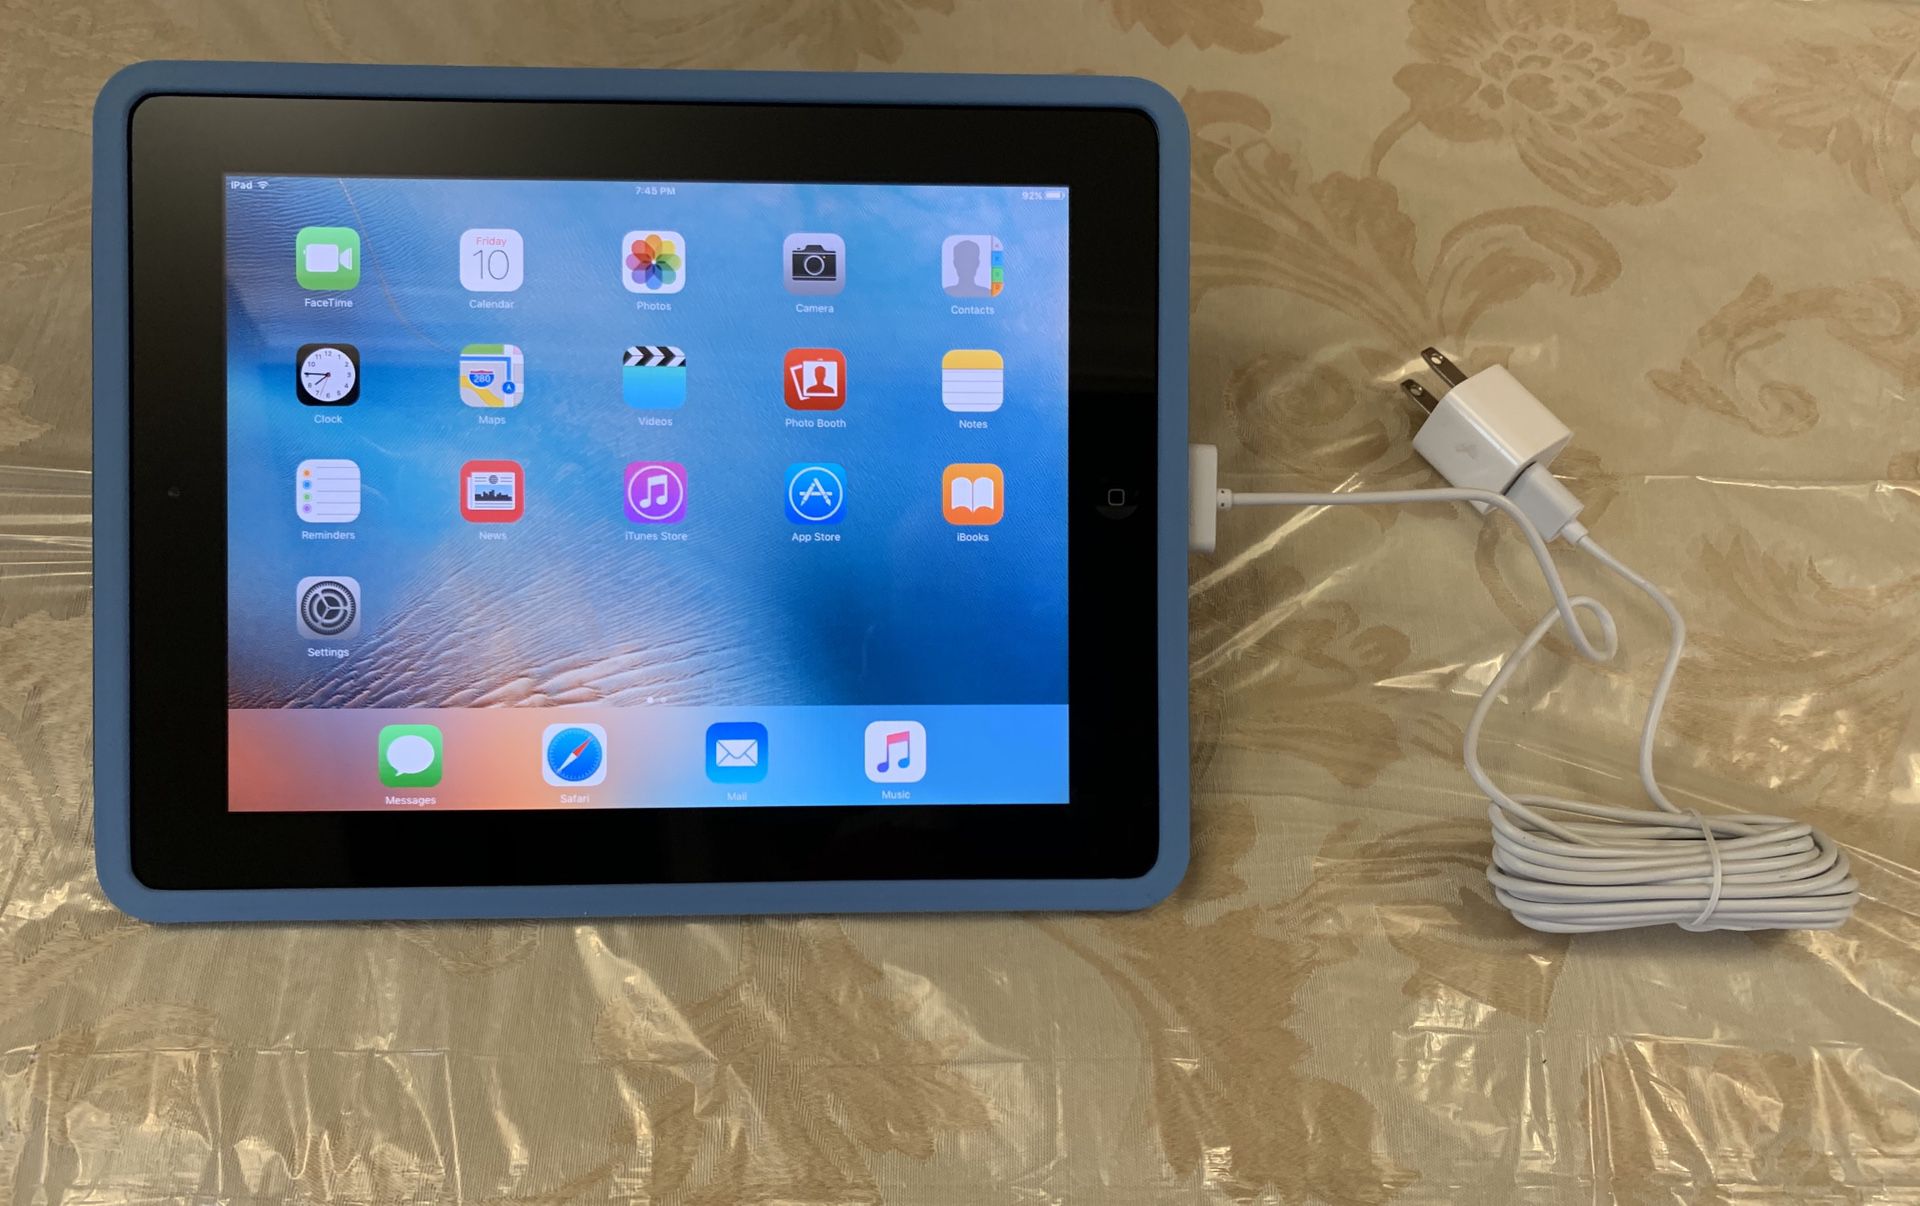 Apple iPad 2 MC769LL/A Tablet (16GB, WiFi, Black) 2nd Generation